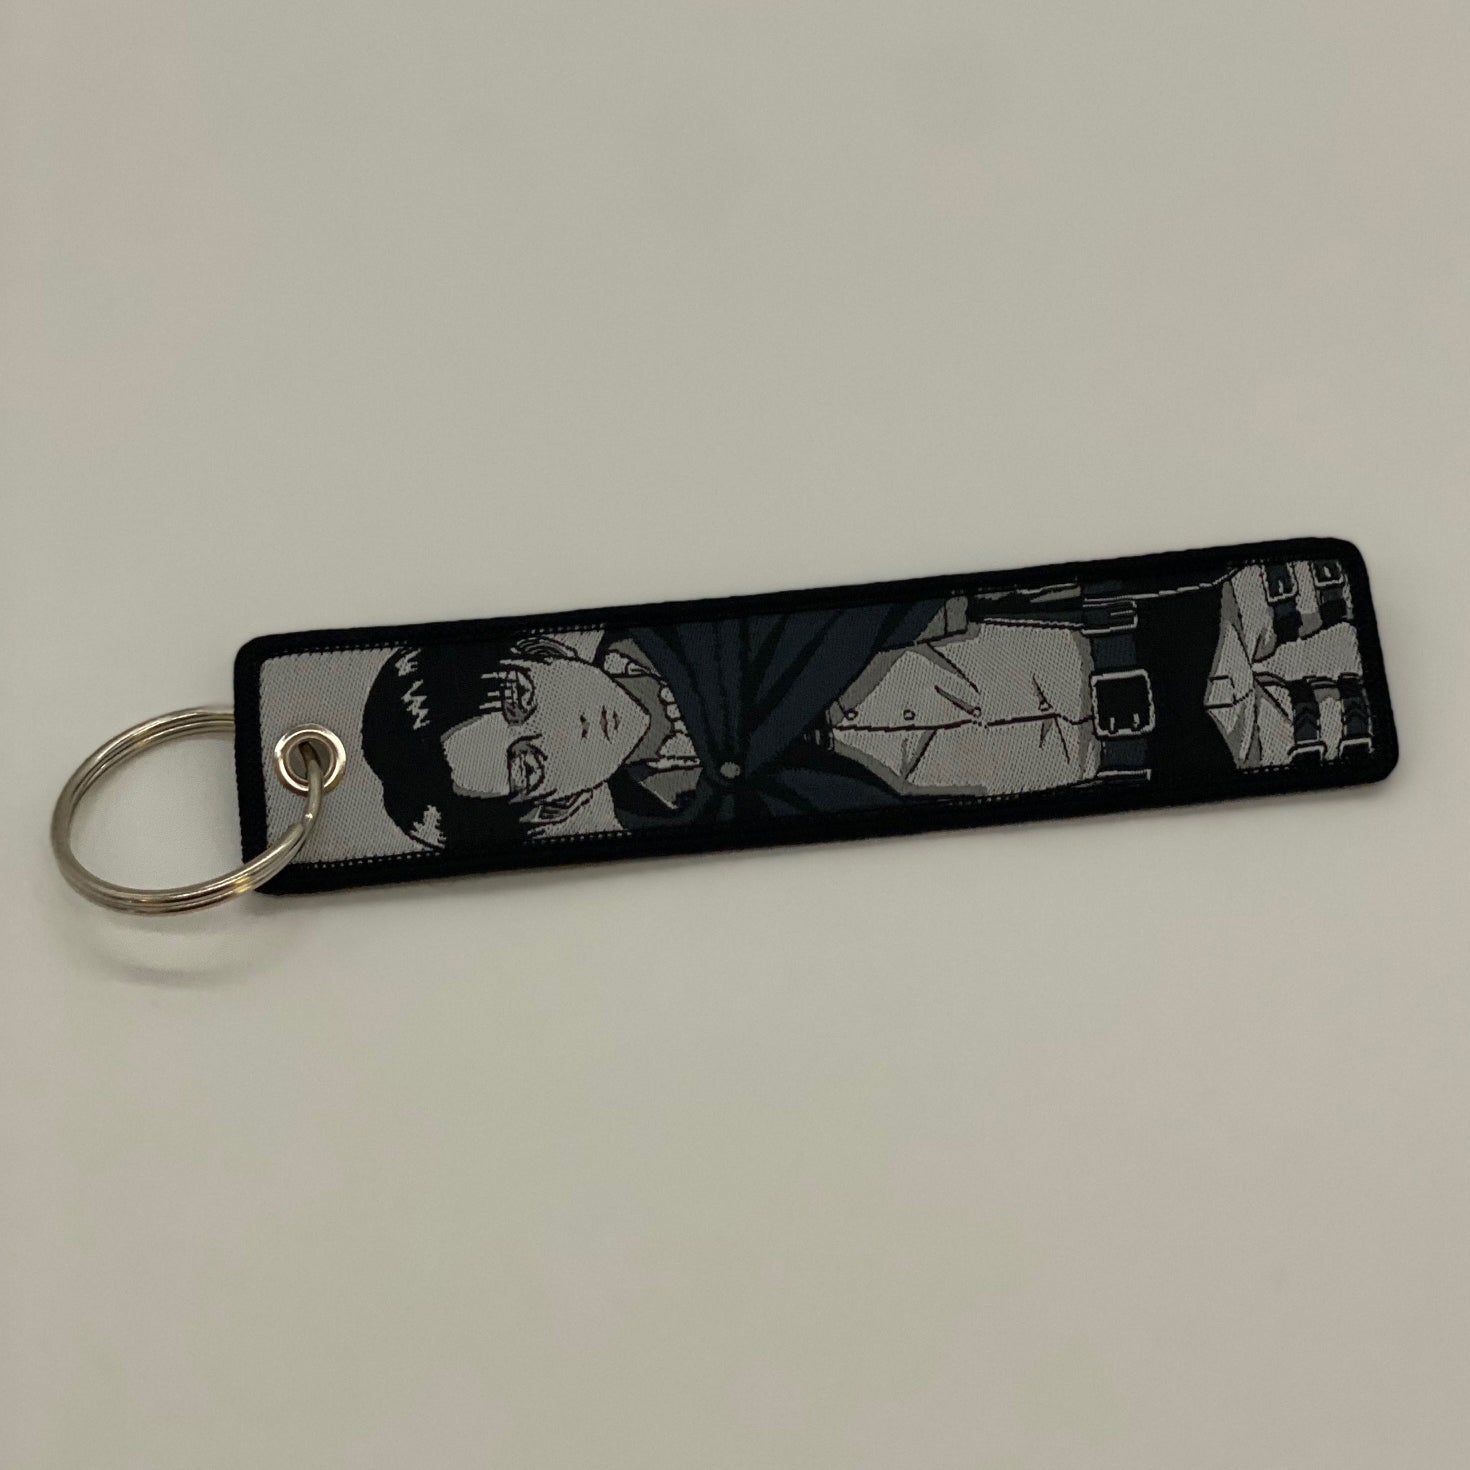 Key Tag Key Ring Label Keychain by Titan